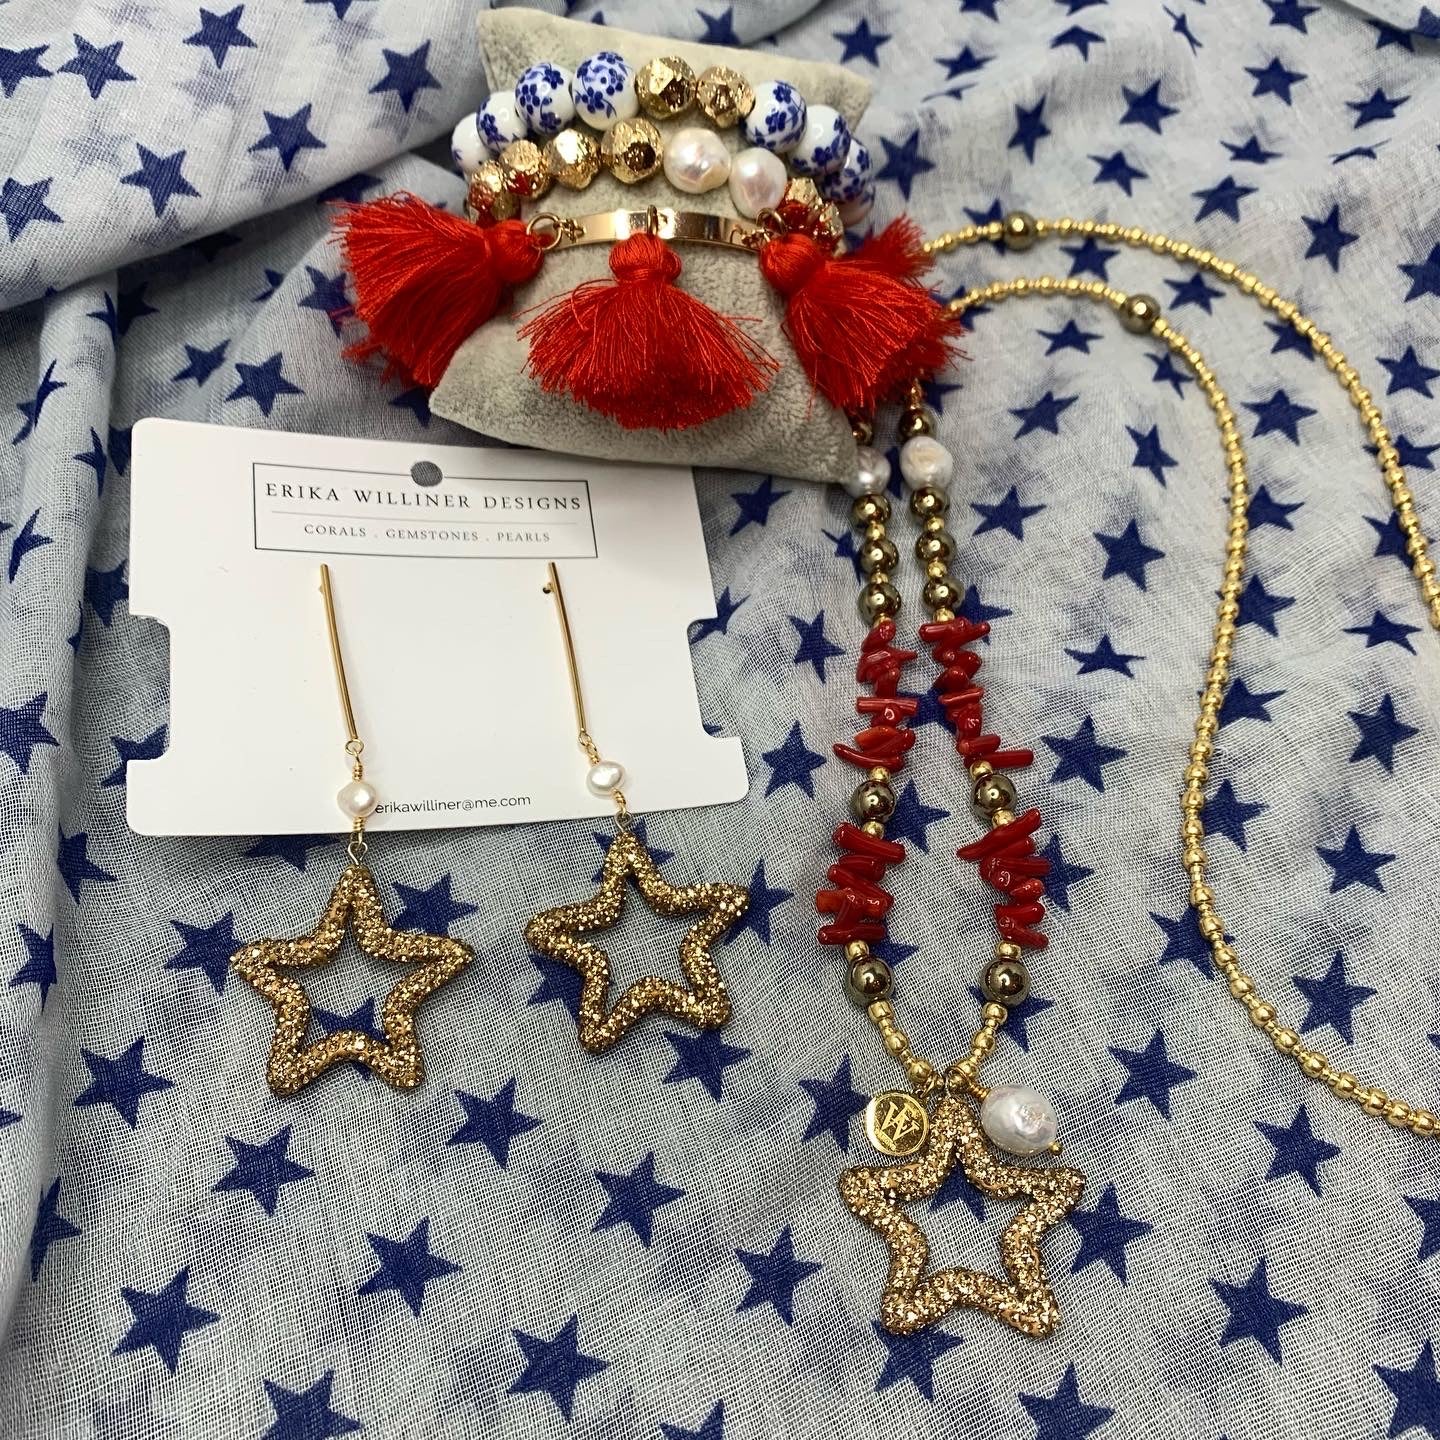 Erika Williner Designs - Freedom star necklace